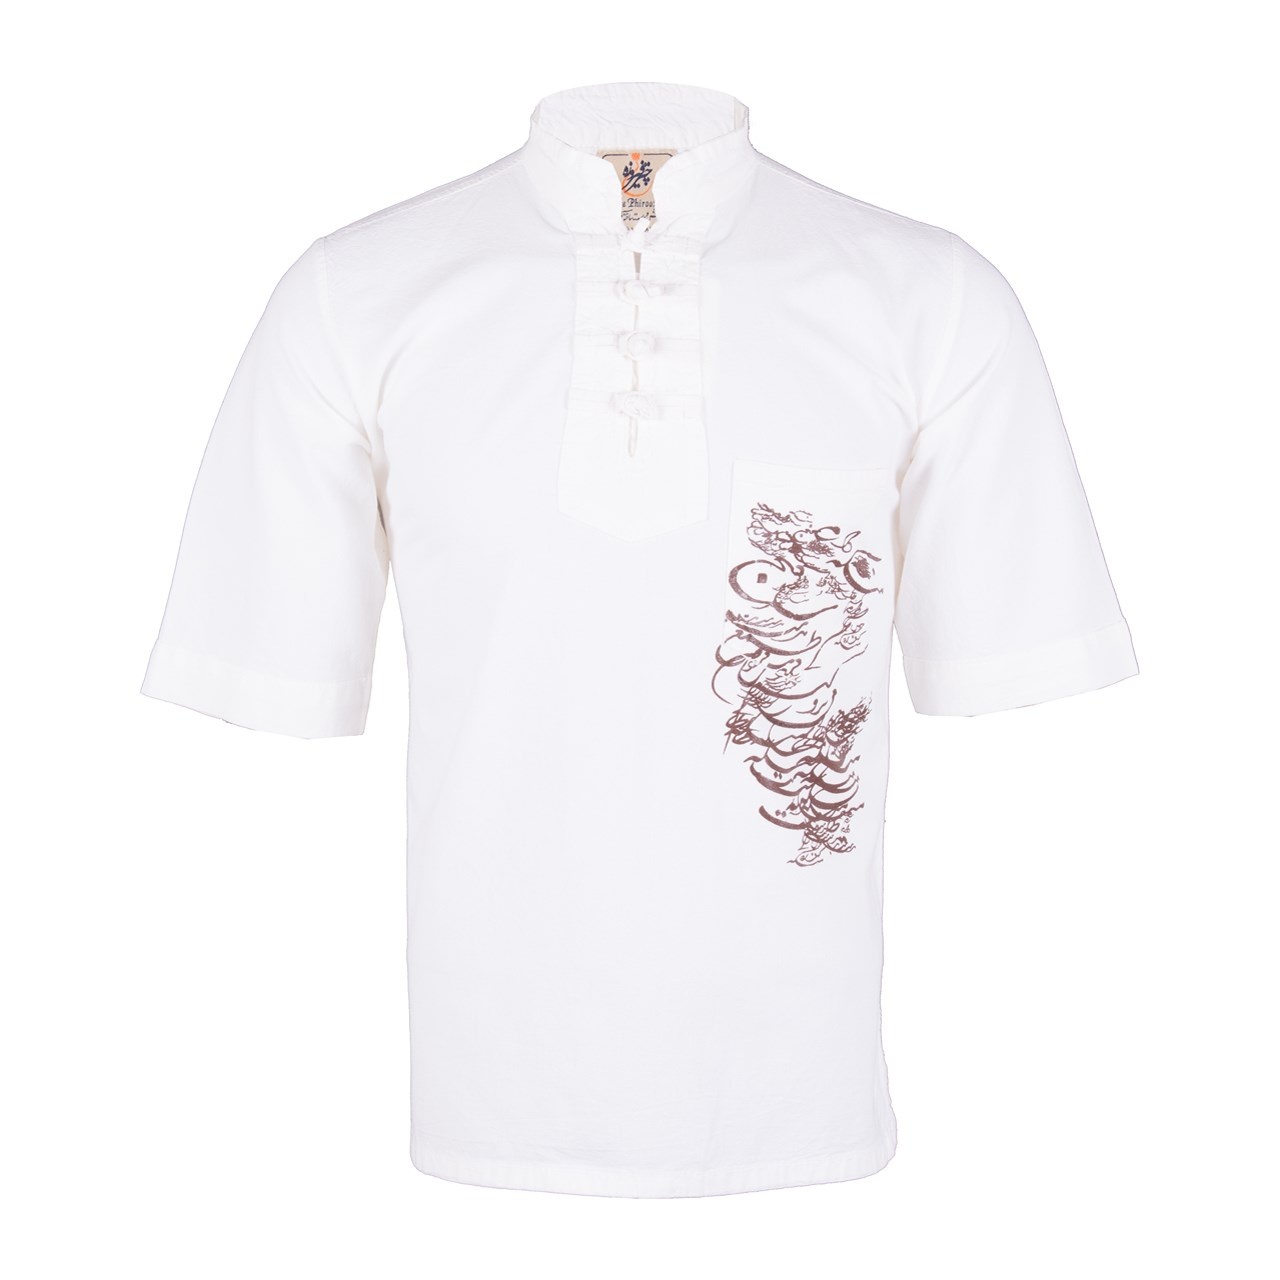 پیراهن مردانه الیاف طبیعی چترفیروزه مدل آستین کوتاه چاپی چهارگره سفید کد 1